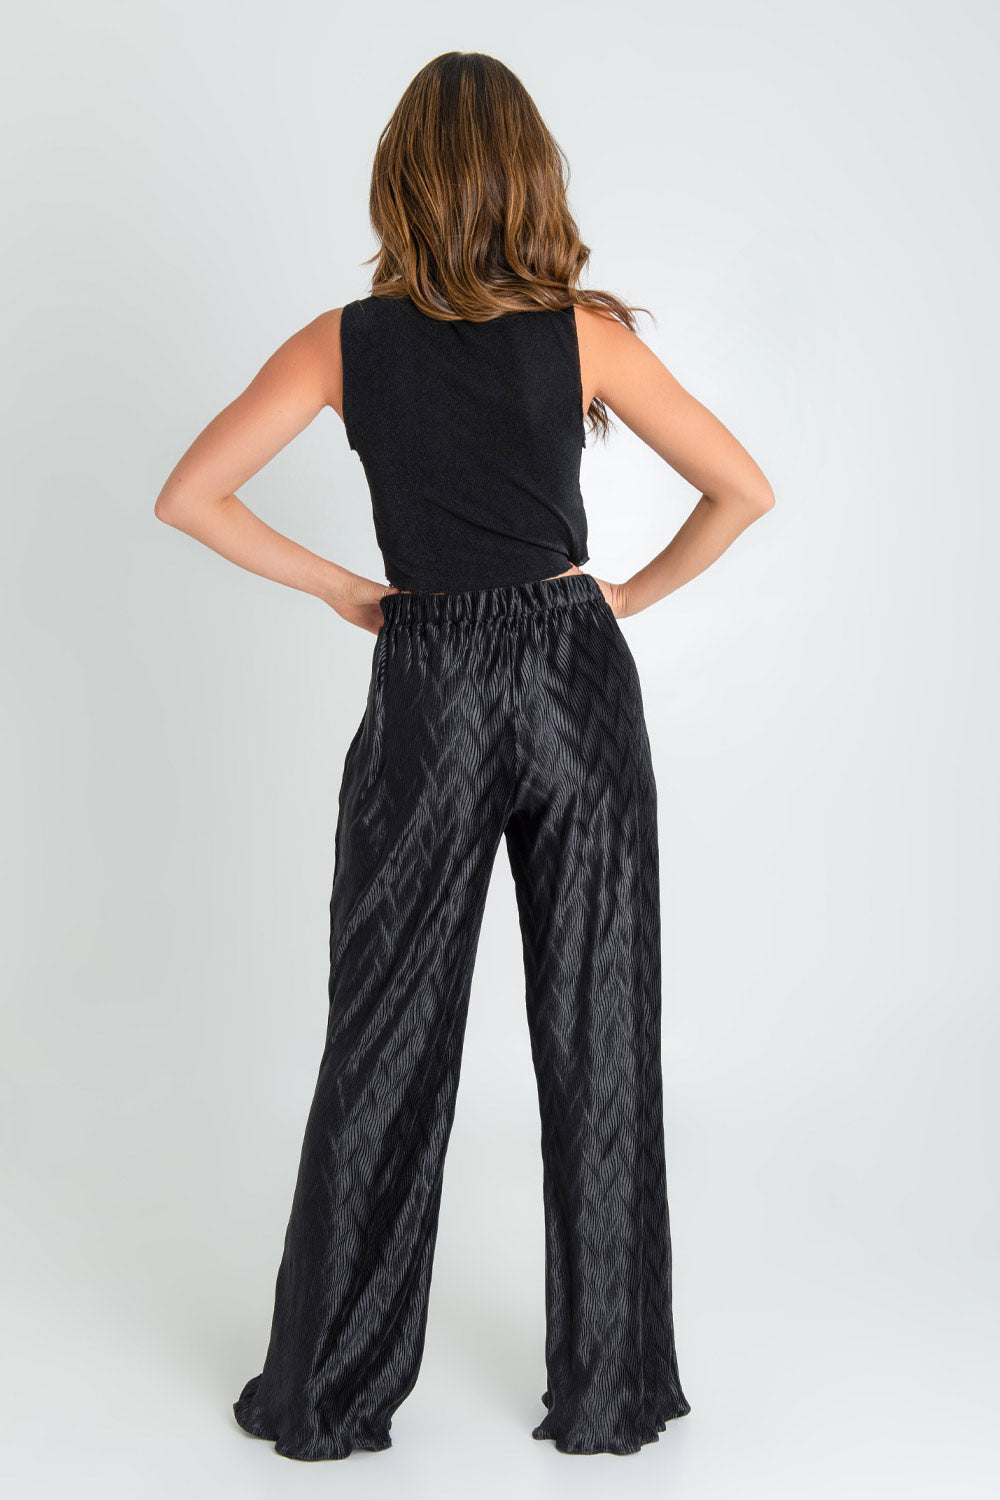 Pantalón satinado de fit wide leg, cintura alta con pretina elástica y detalle de textura en tejido.